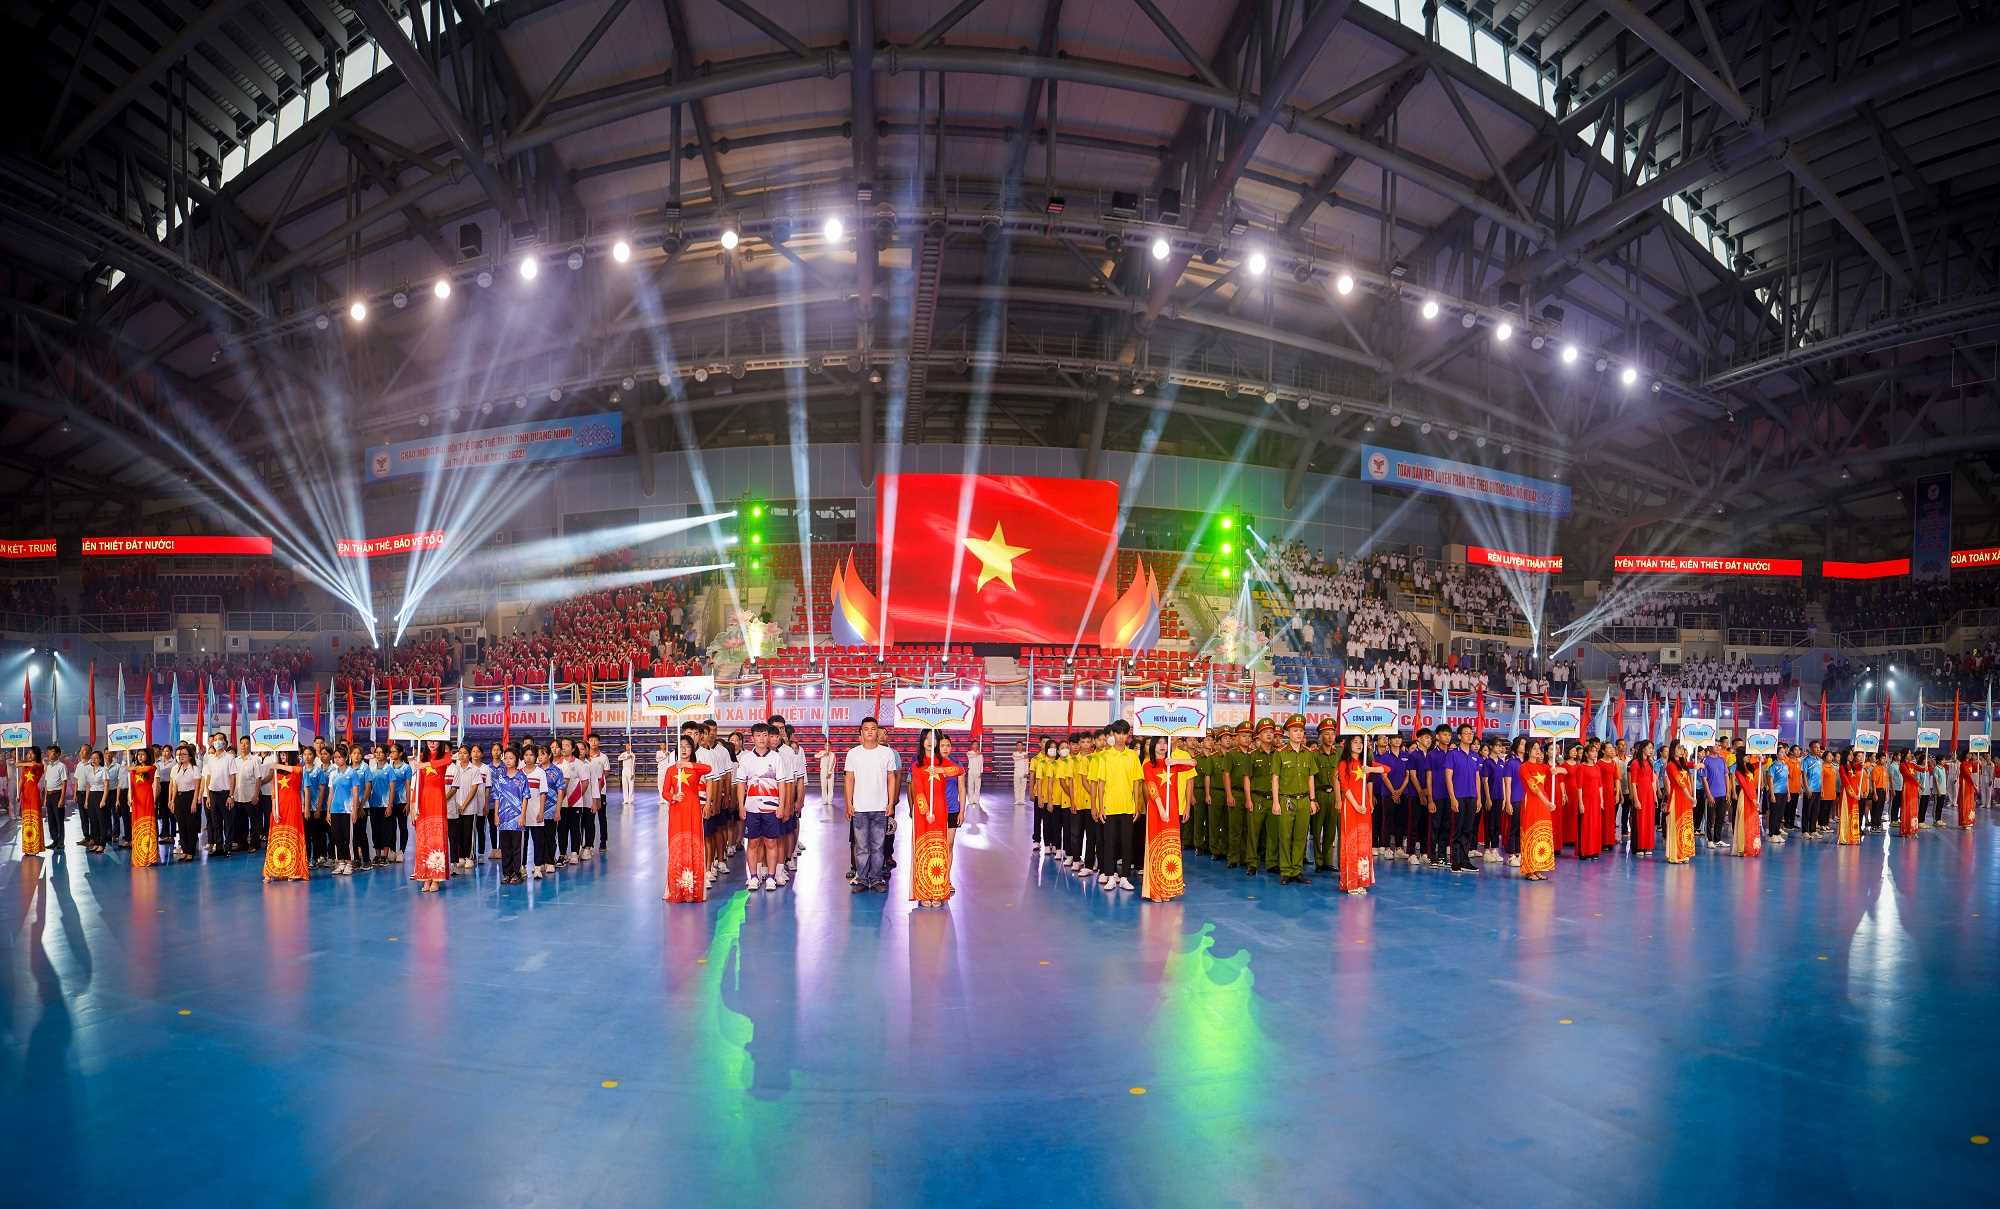 Thể dục thể thao Quảng Ninh vững bước trên chặng đường mới - Ảnh 1.